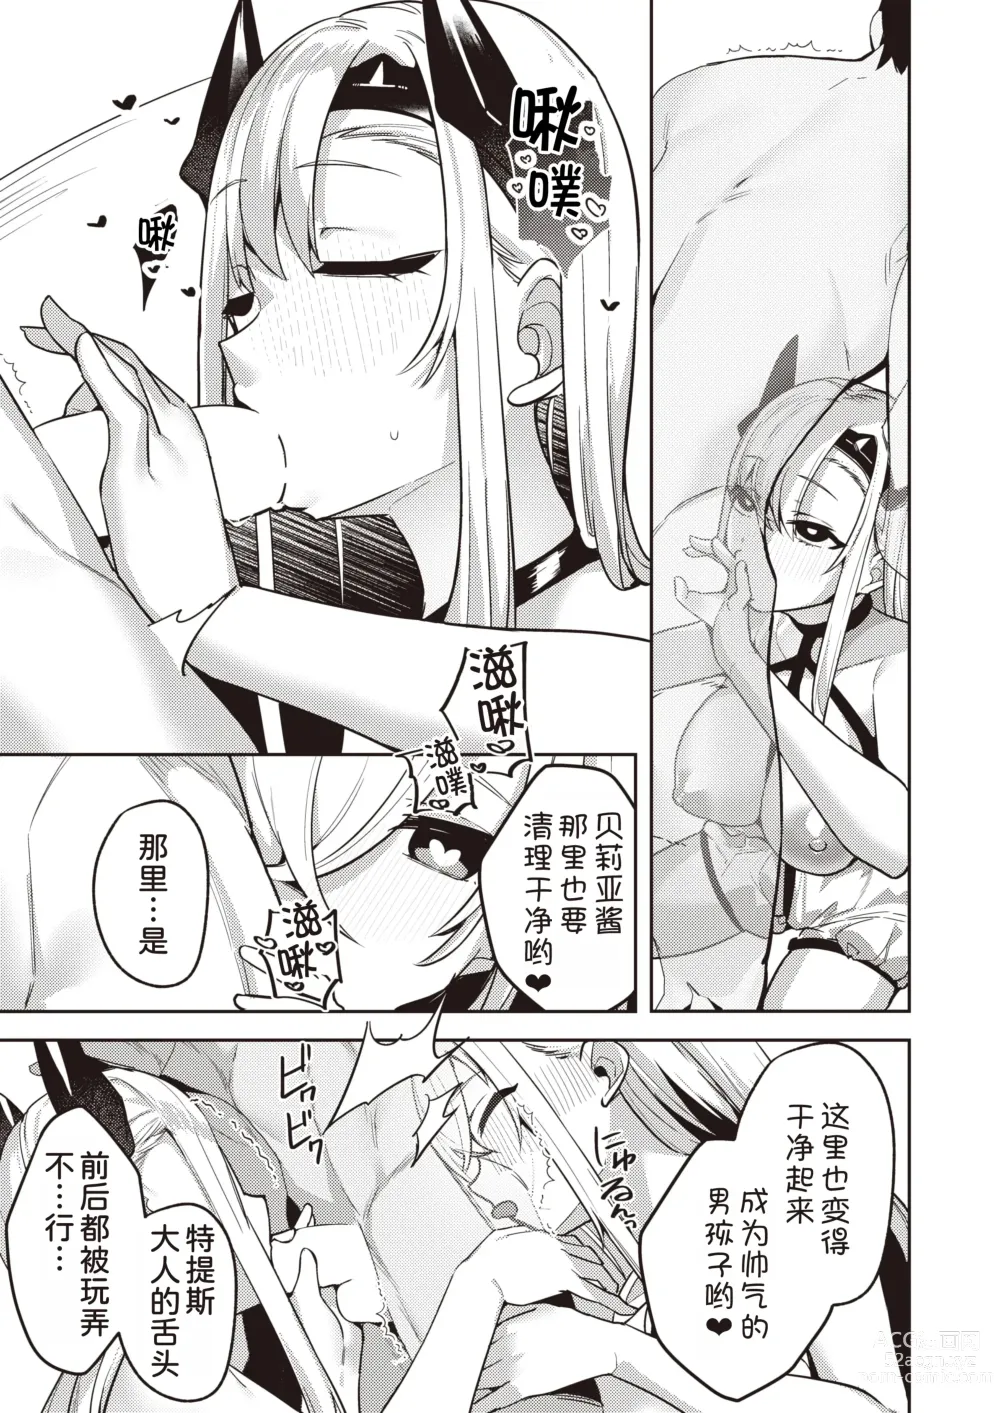 Page 12 of manga Chotto Yabai Megami to Maou to Amayakababubabu Suru no wa Dame desu ka?